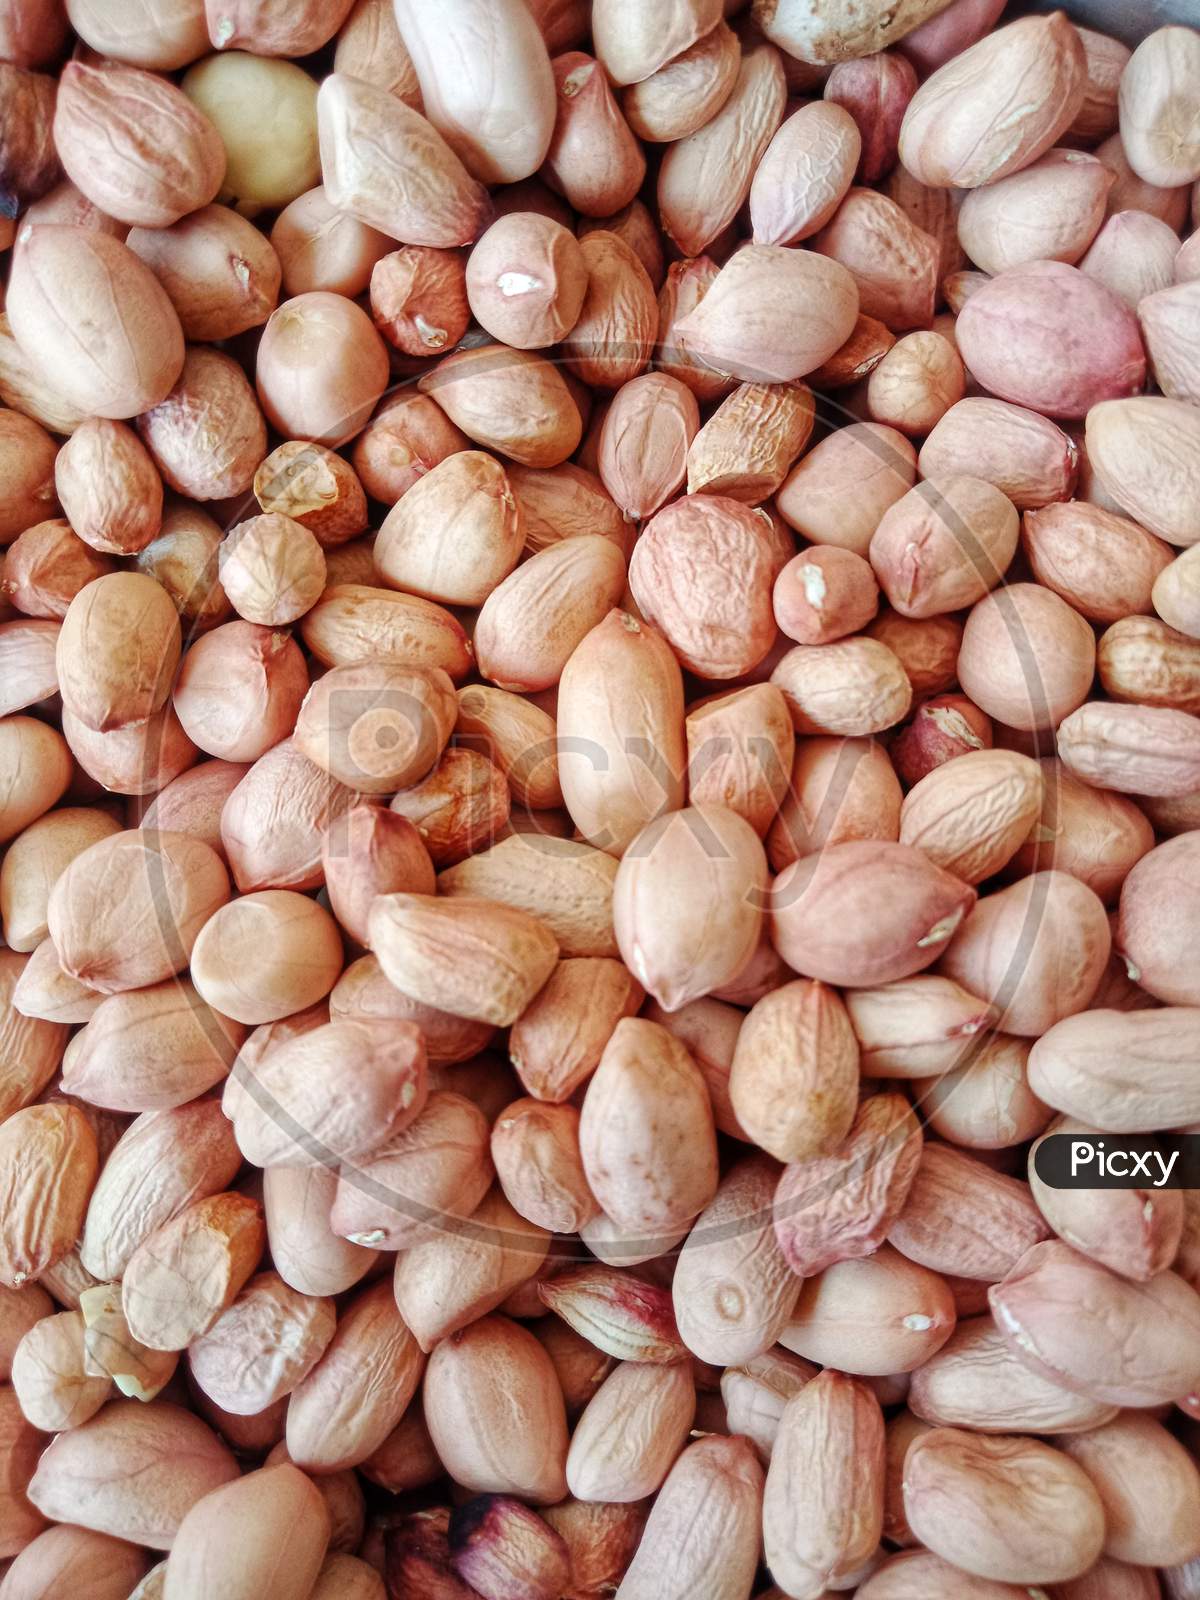 Groundnut, peanut, mumfali, nut